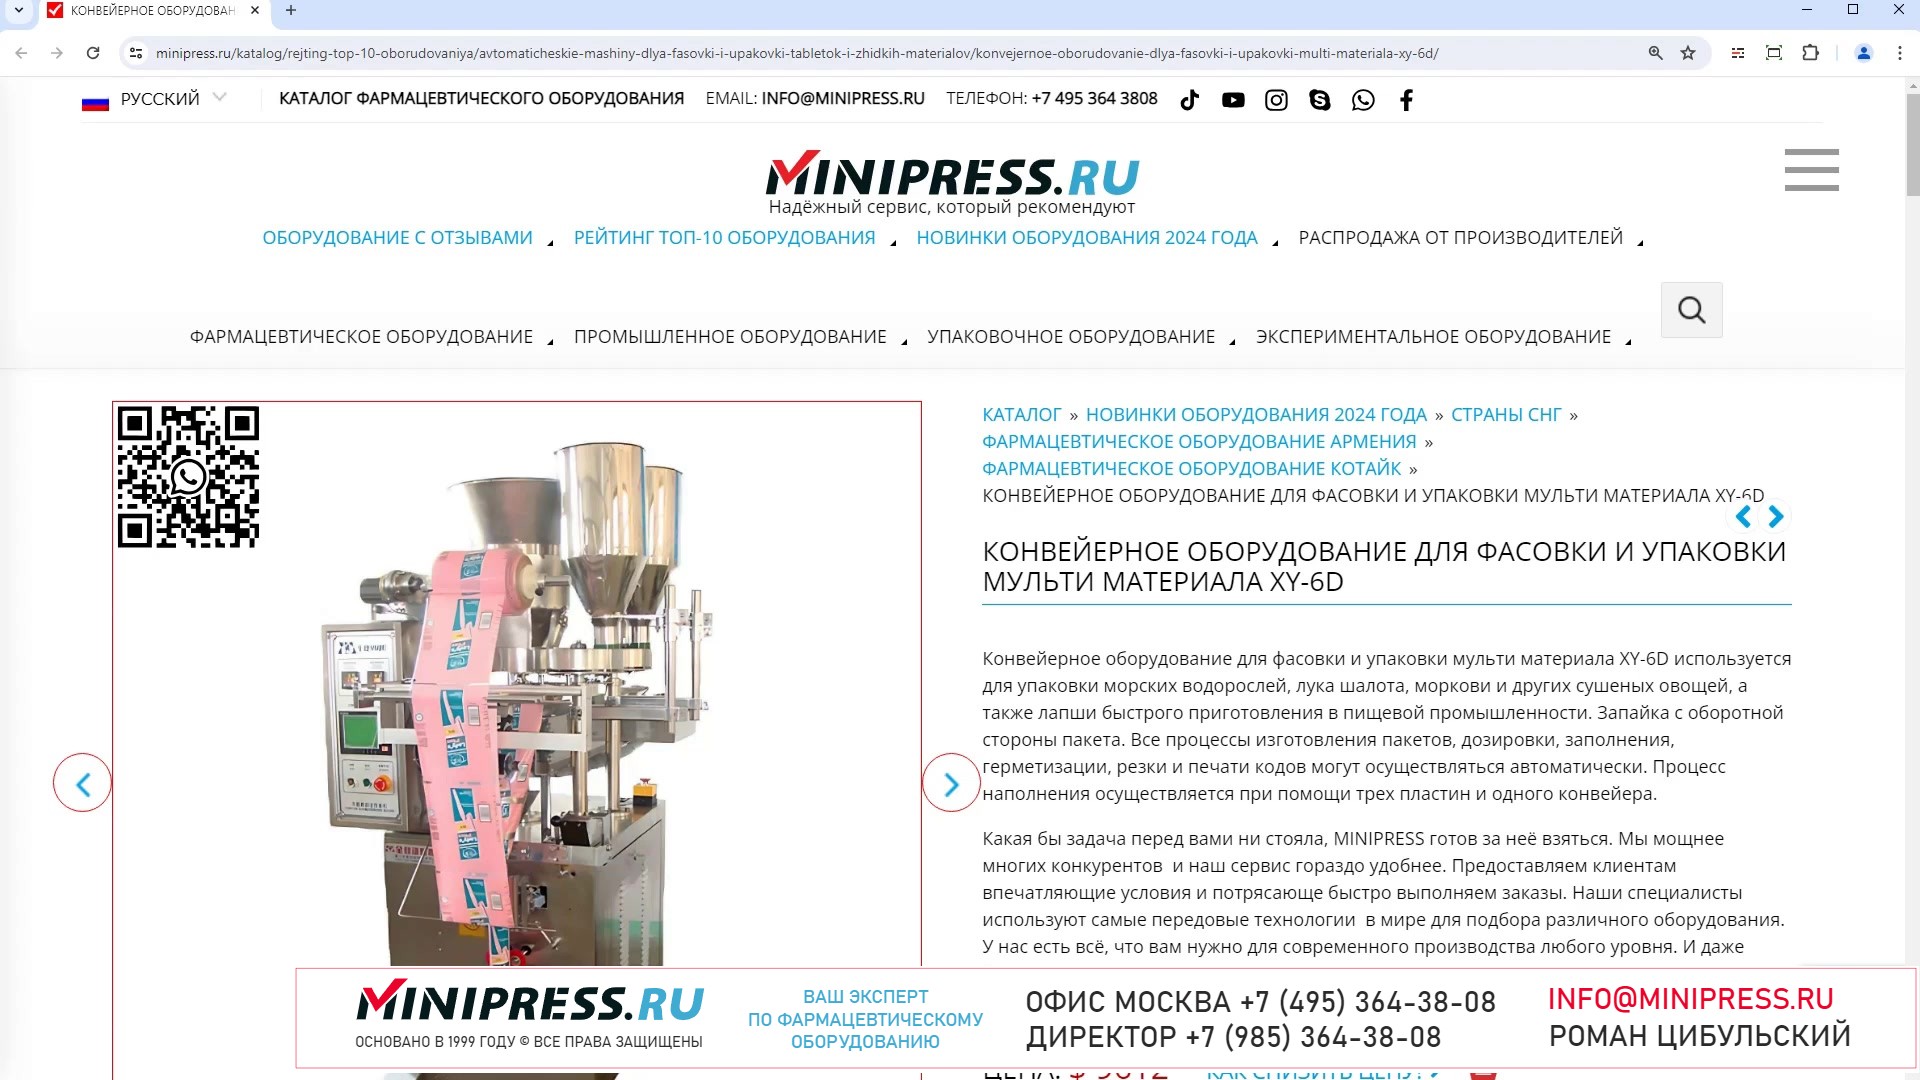 Minipress.ru Конвейерное оборудование для фасовки и упаковки мульти материала XY-6D